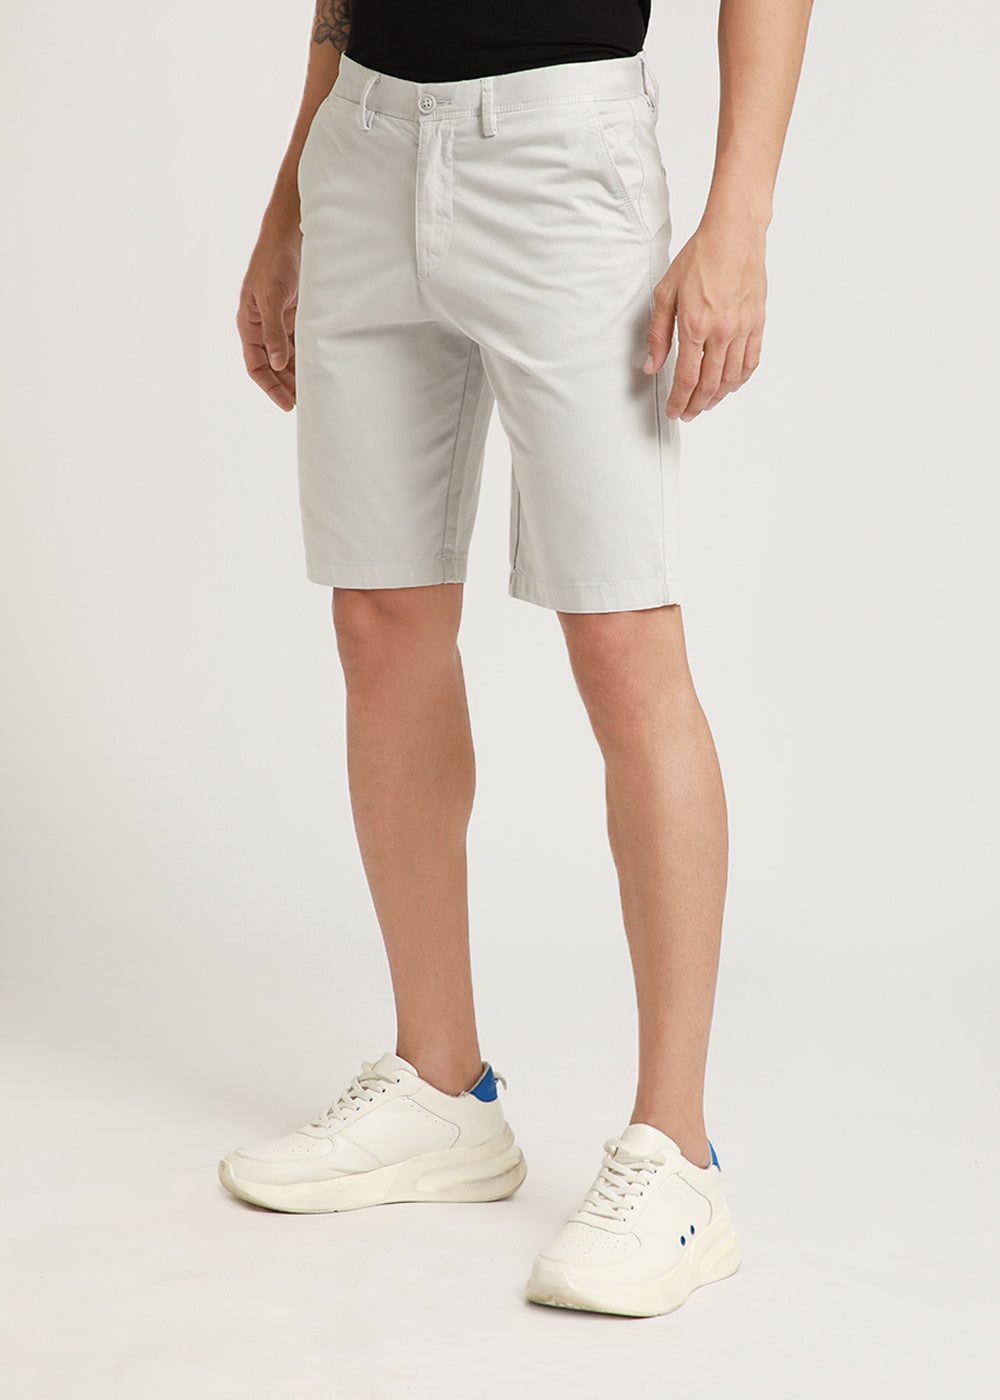 Cool Grey Shorts